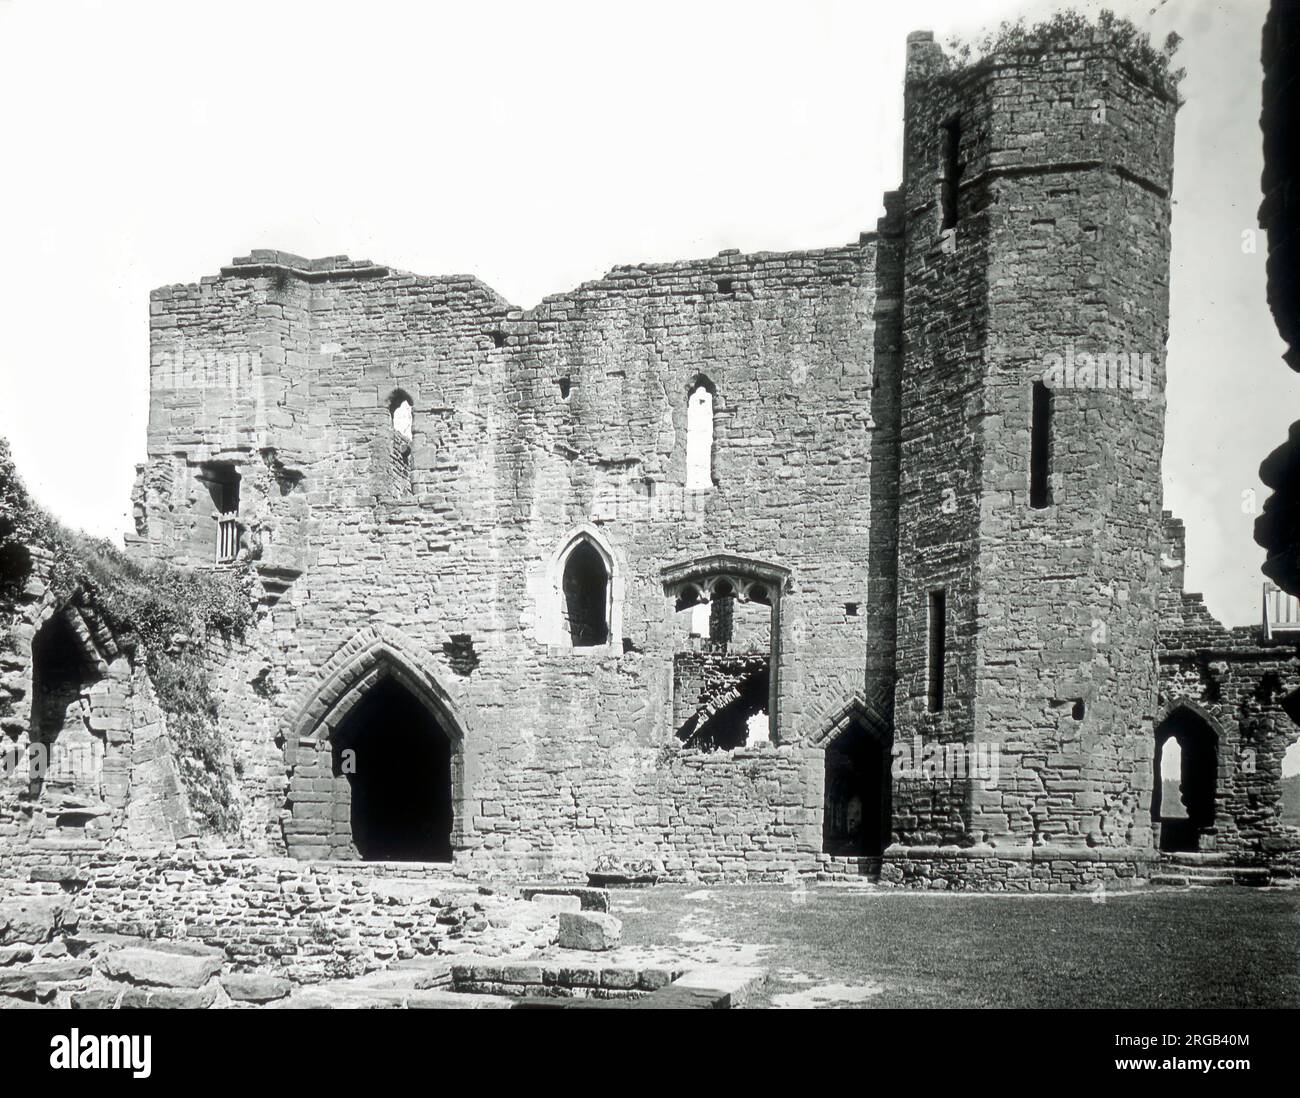 Ruine non identifiée du château dans le nord du pays de Galles ou Herefordshire. Banque D'Images